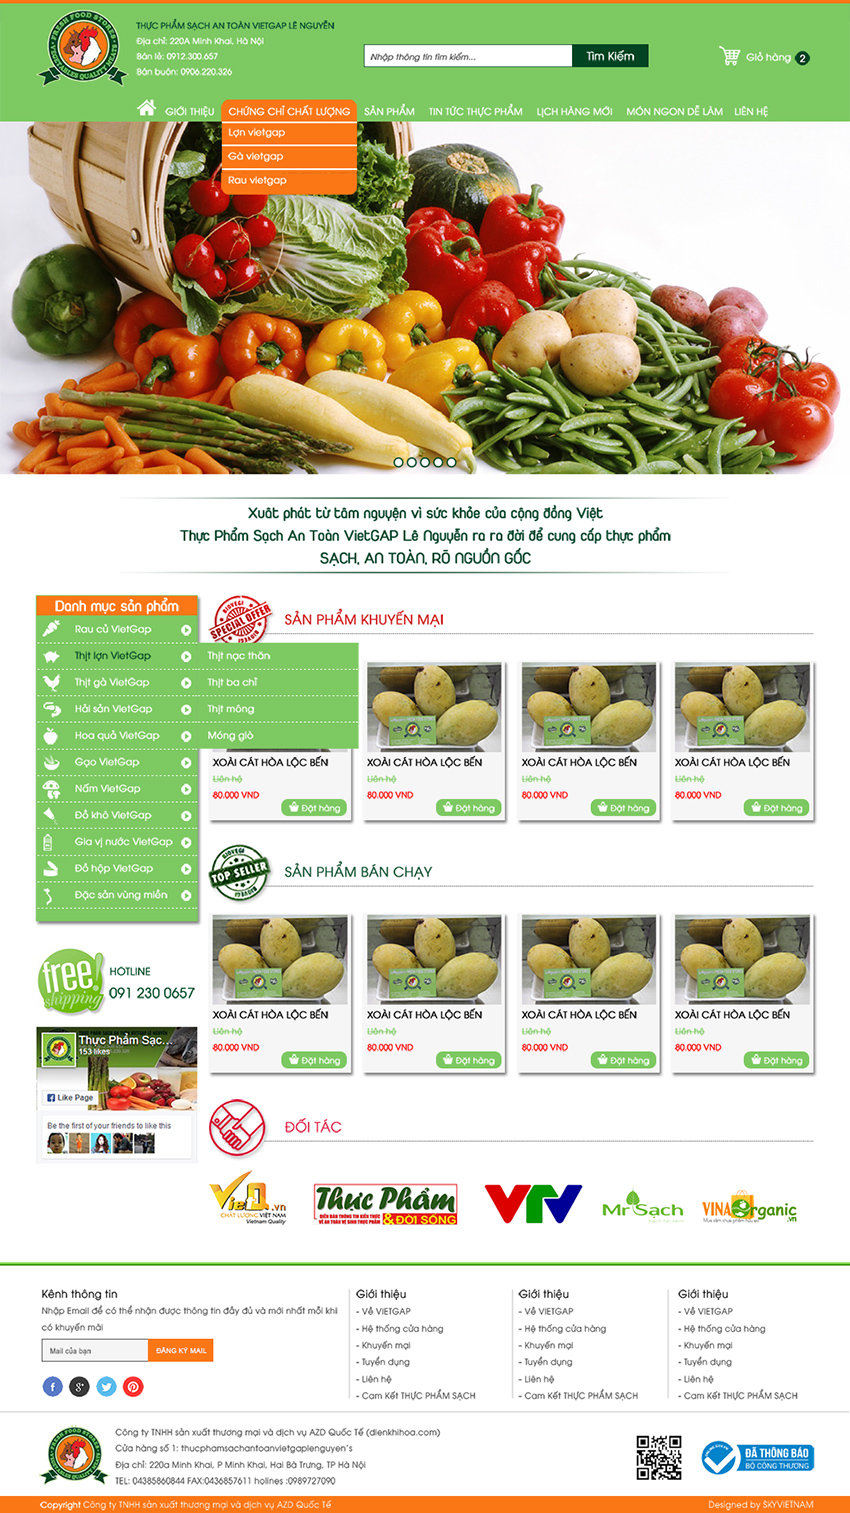 Mẫu website bán hàng thực phẩm an toàn Viet Gap